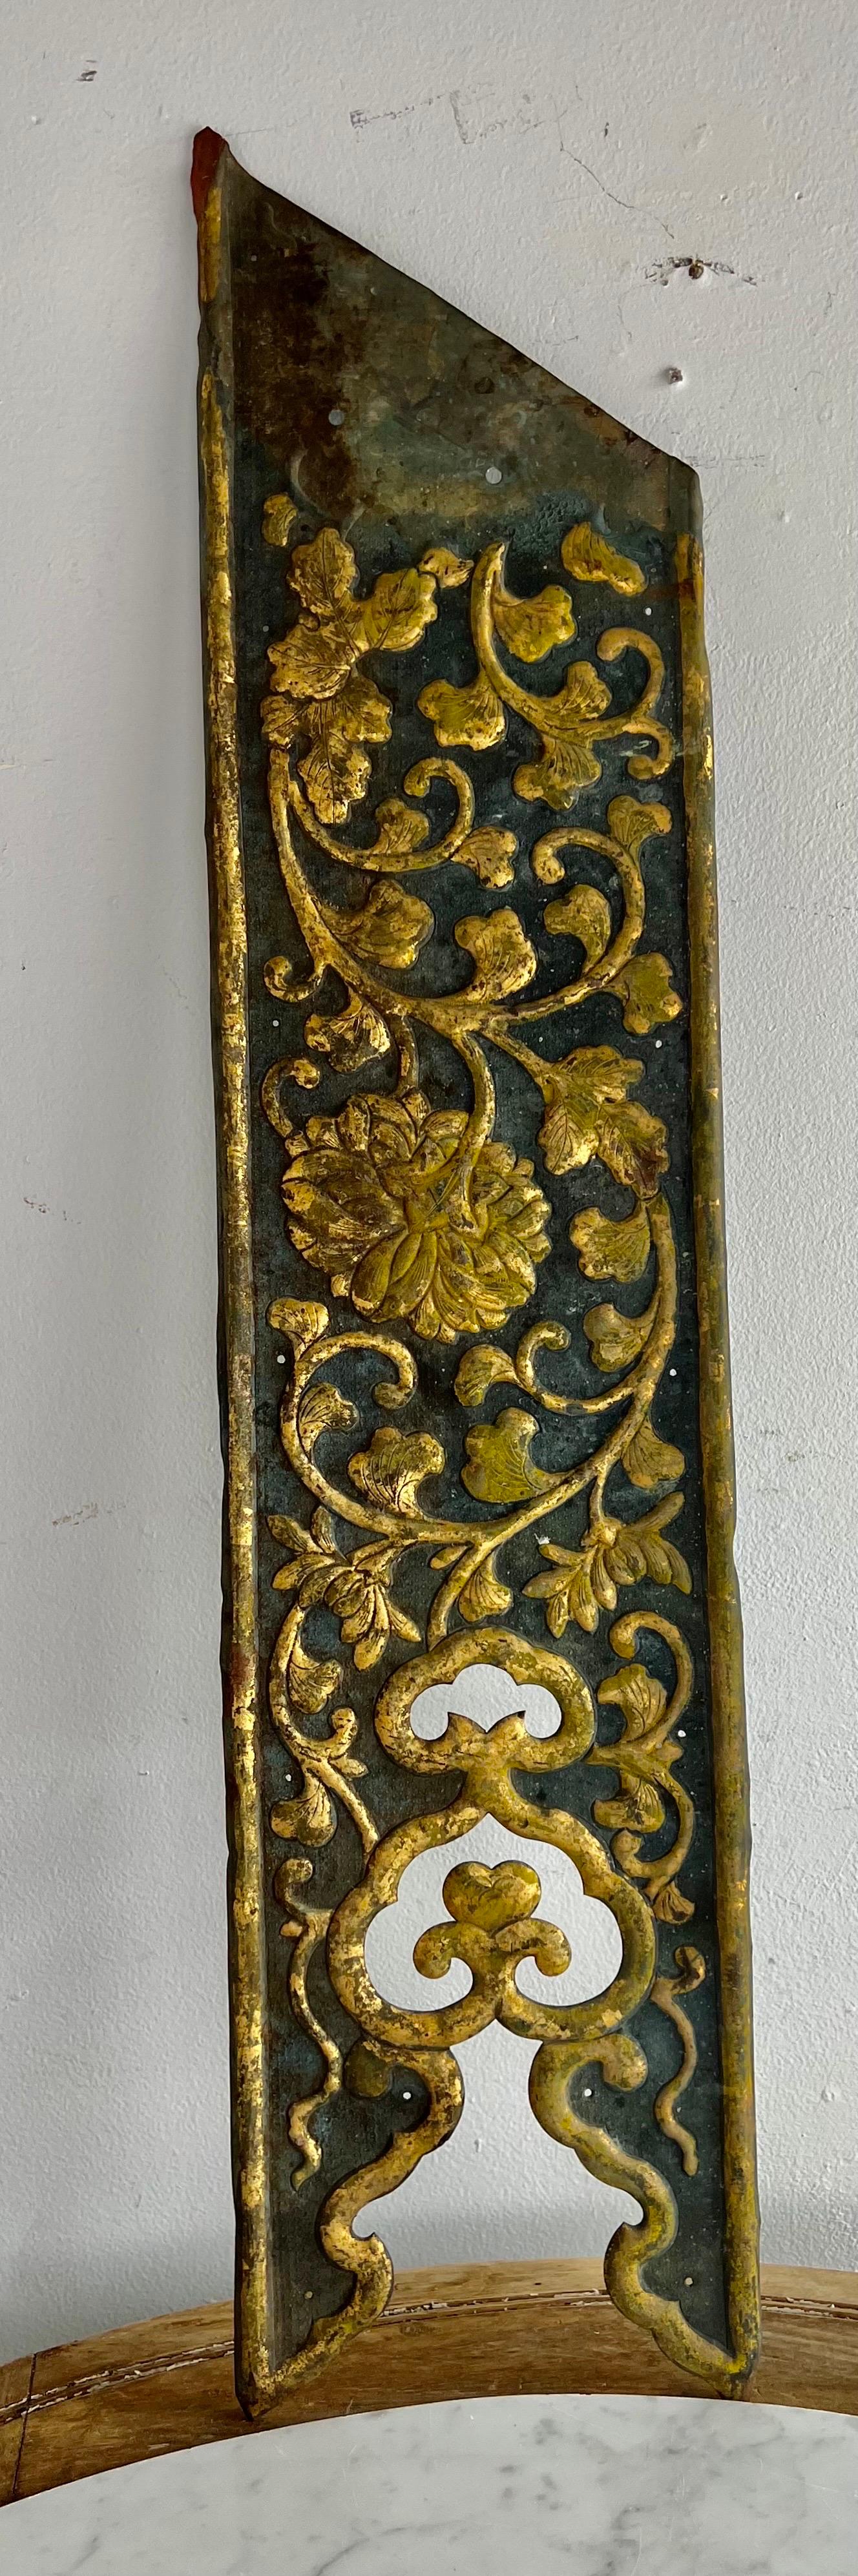 Panneau italien du XIXe siècle en métal doré, peint à la main et martelé.  Le panneau est décoré de fleurs en feuilles d'or qui tourbillonnent sur toute sa surface.